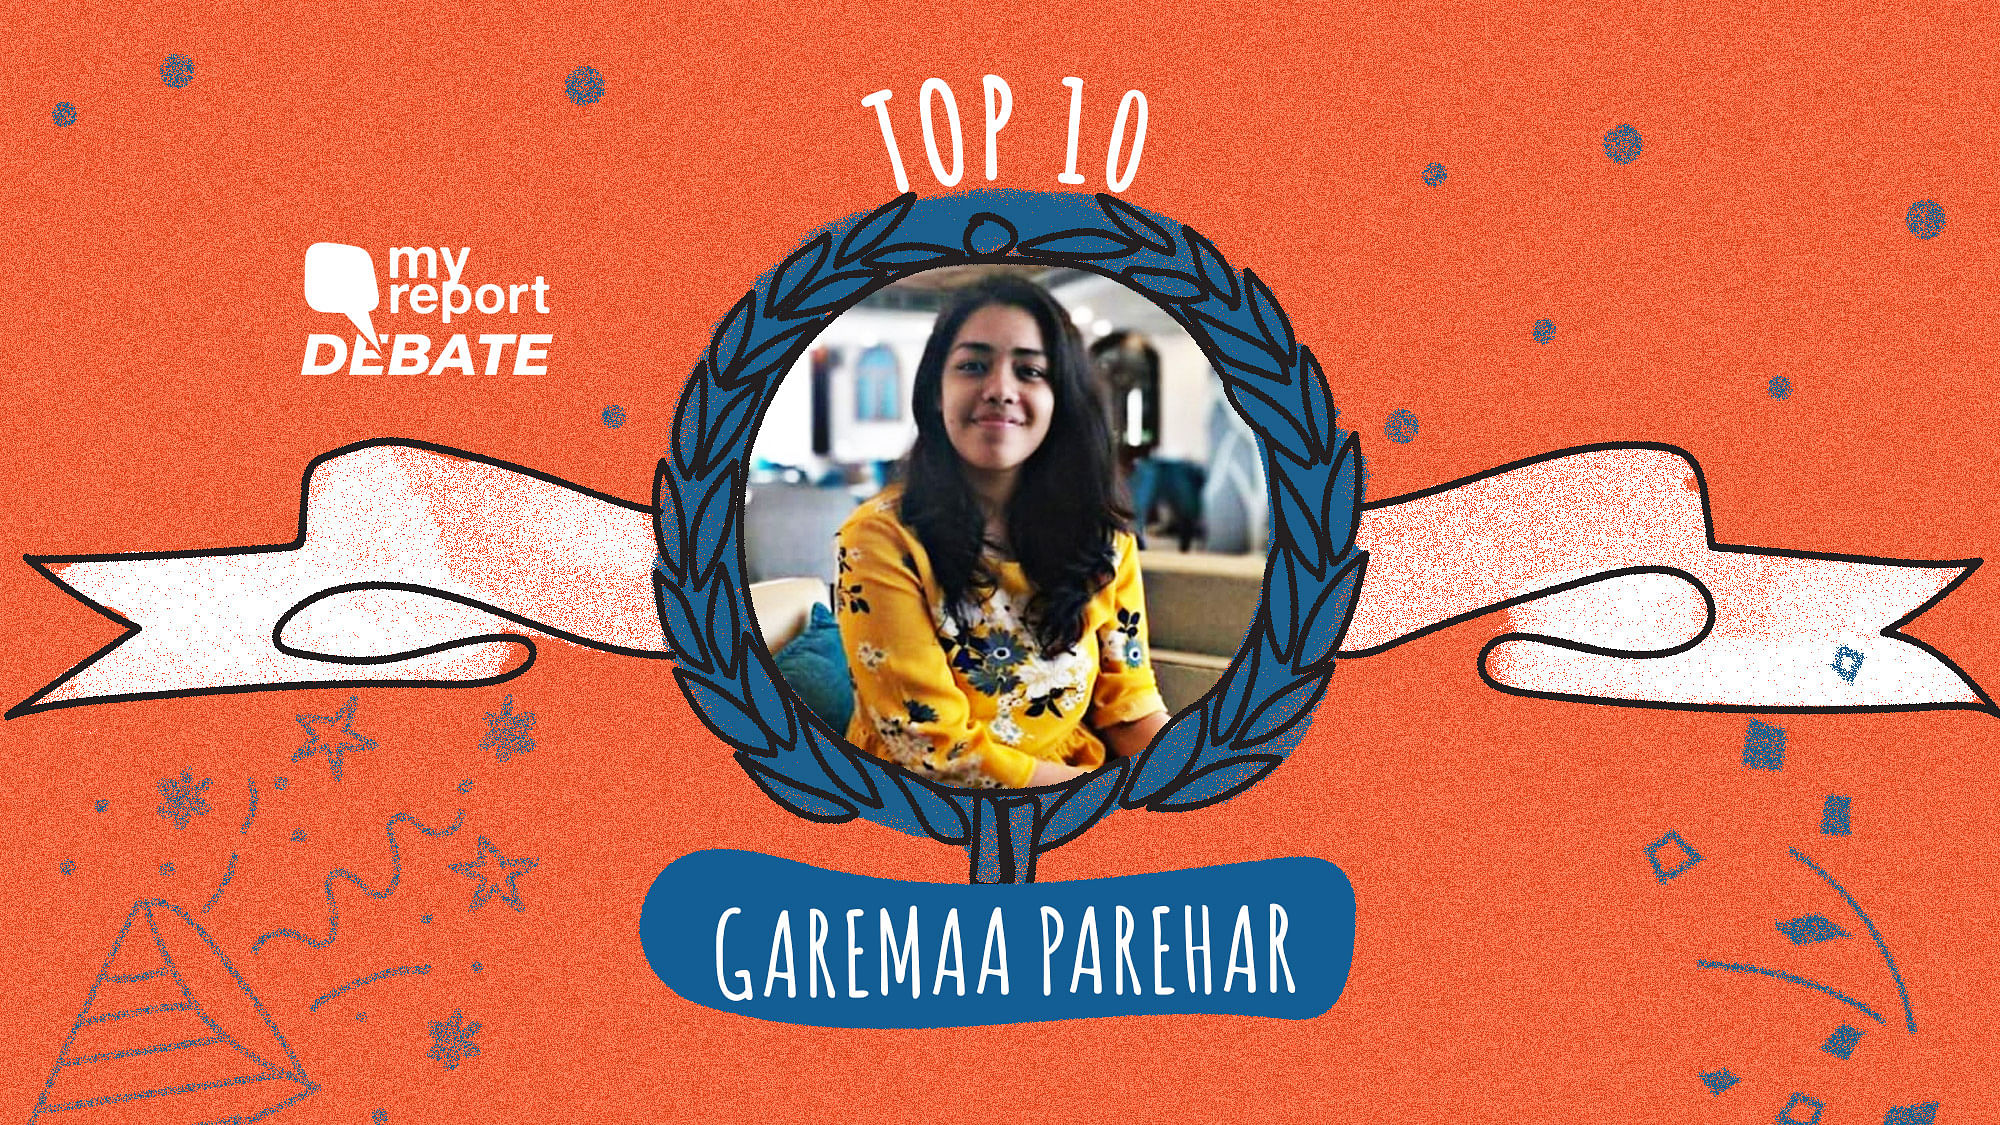 Garemaa Parihar’s essay is among the Top 10 of the My Report Debate II.